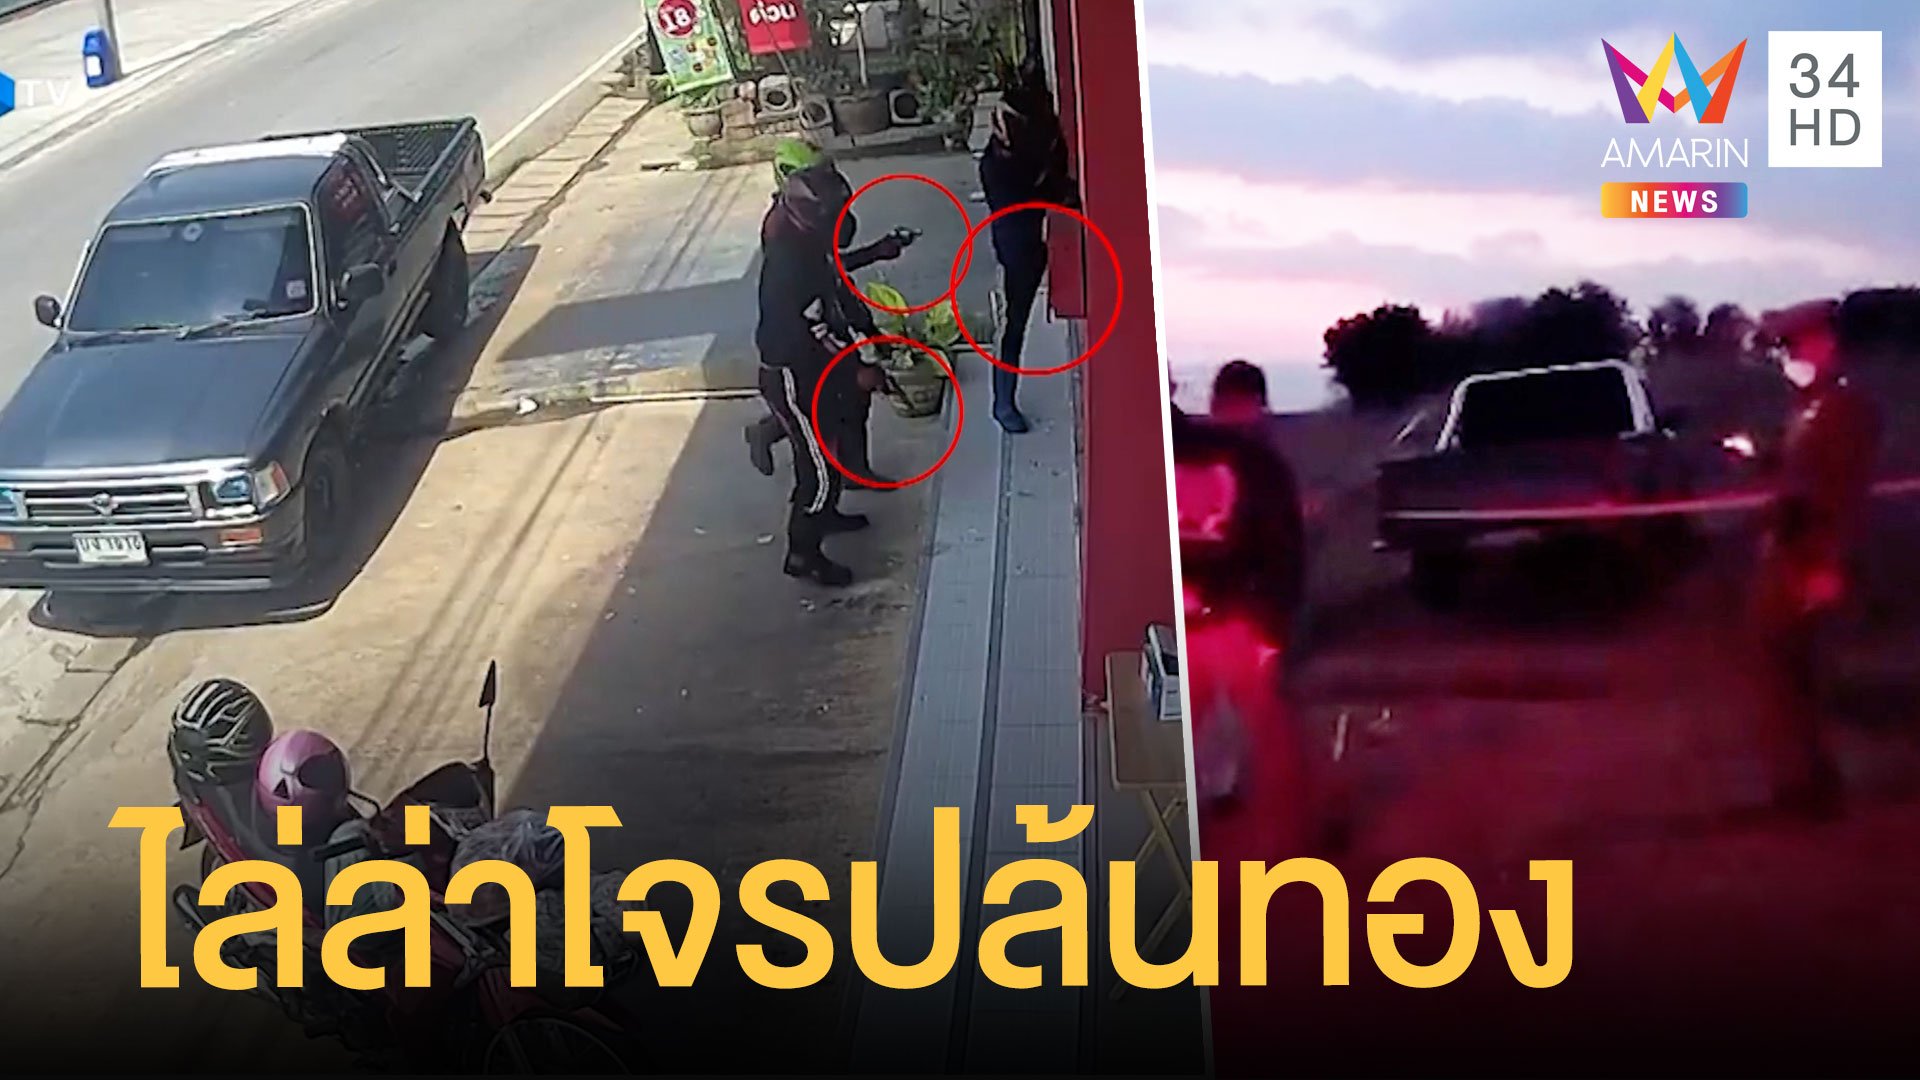 ล่า 3 คนโจรควงปืนยิงถล่มปล้นร้านทอง ตร.ไล่ล่าเจอรถชายแดน | ข่าวเที่ยงอมรินทร์ | 13 ก.พ. 65 | AMARIN TVHD34